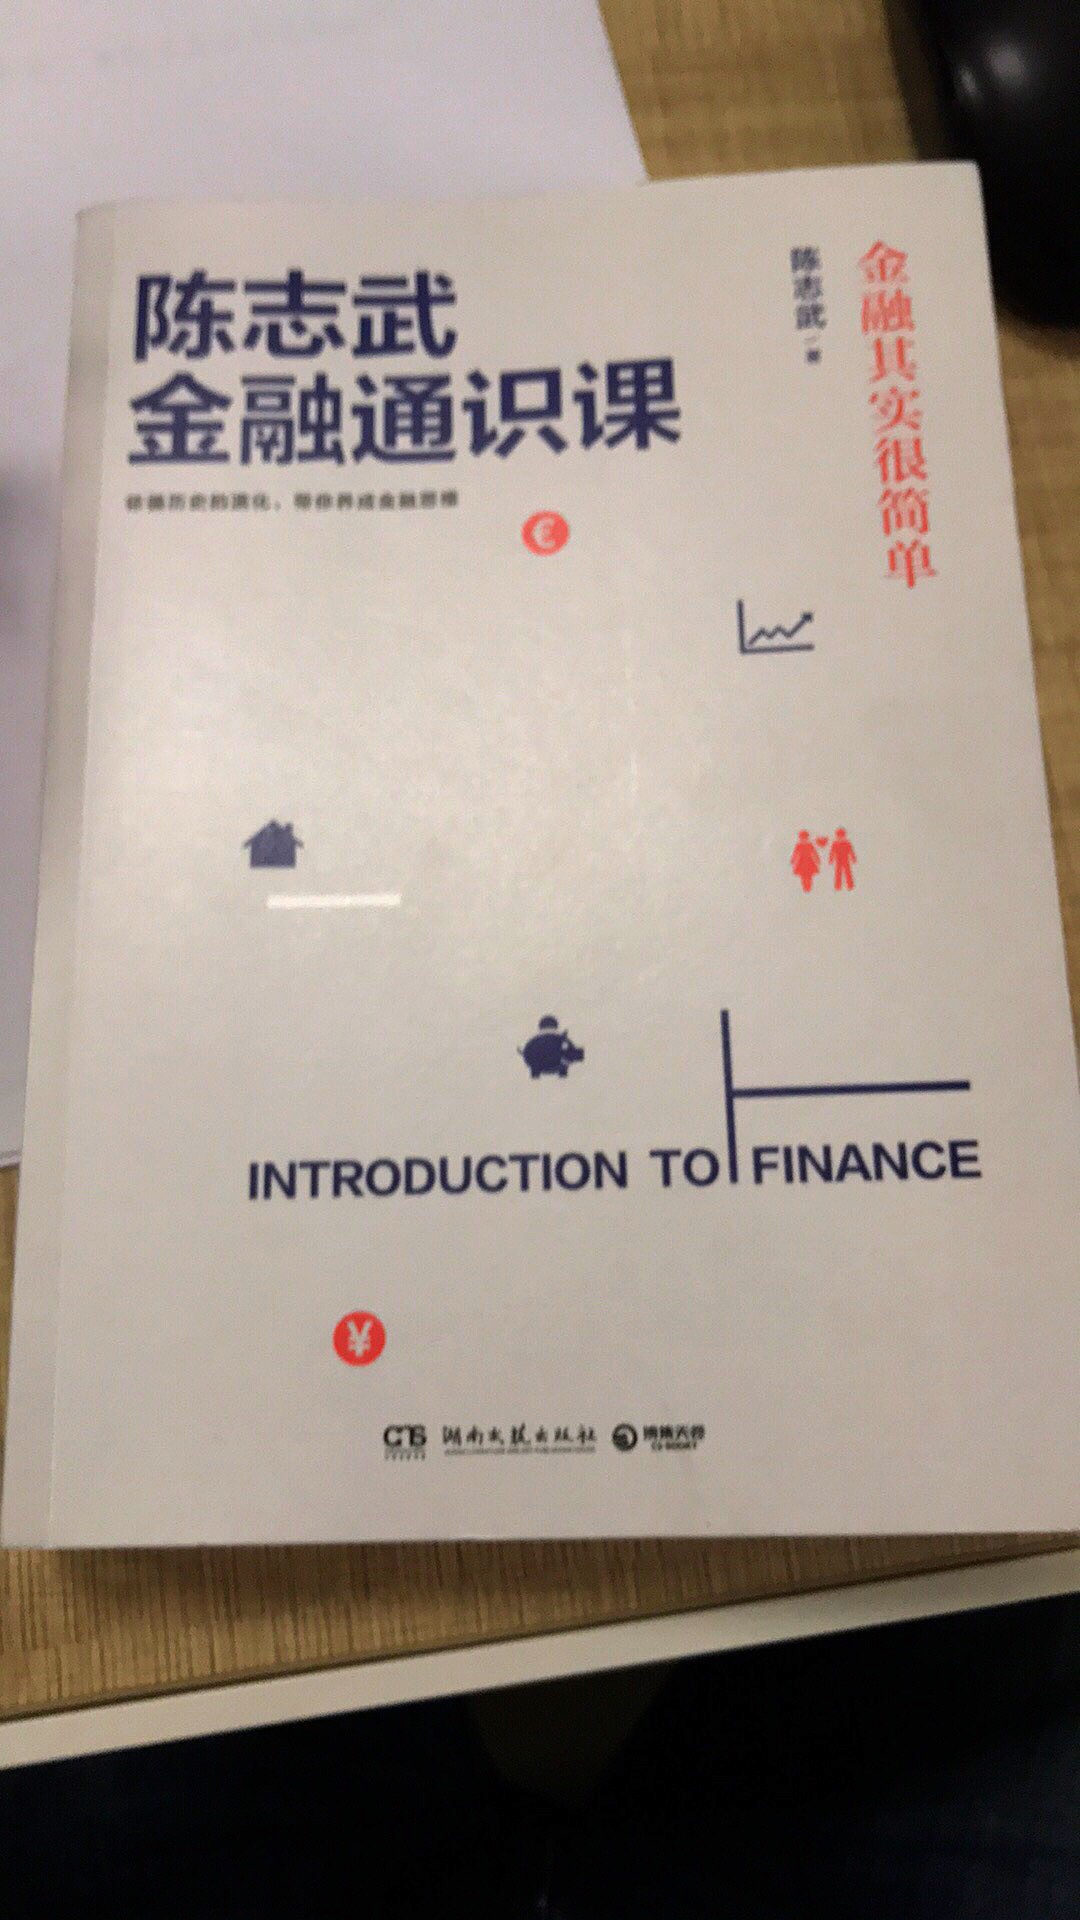 很好的金融知识普及的书籍，值得推荐